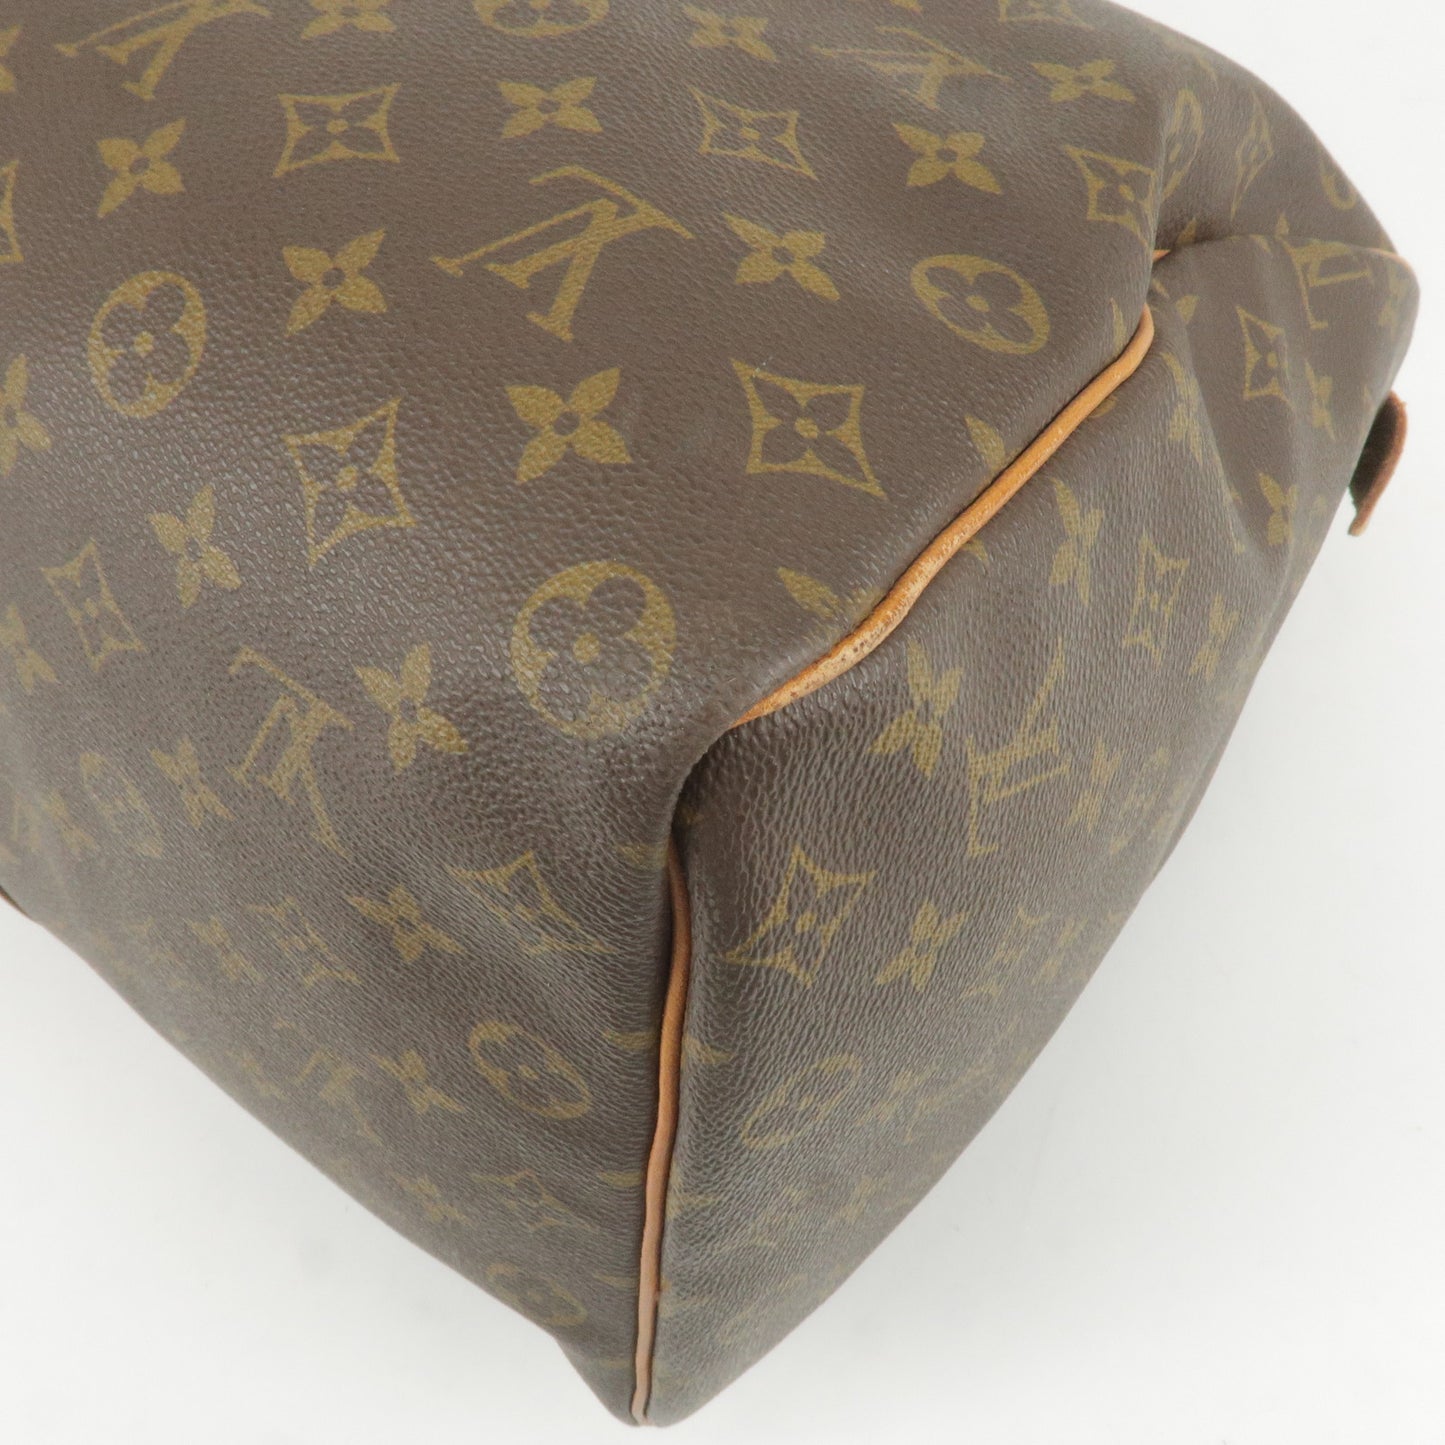 Louis Vuitton Monogram Keep All 50 Boston Bag Old Style M41426